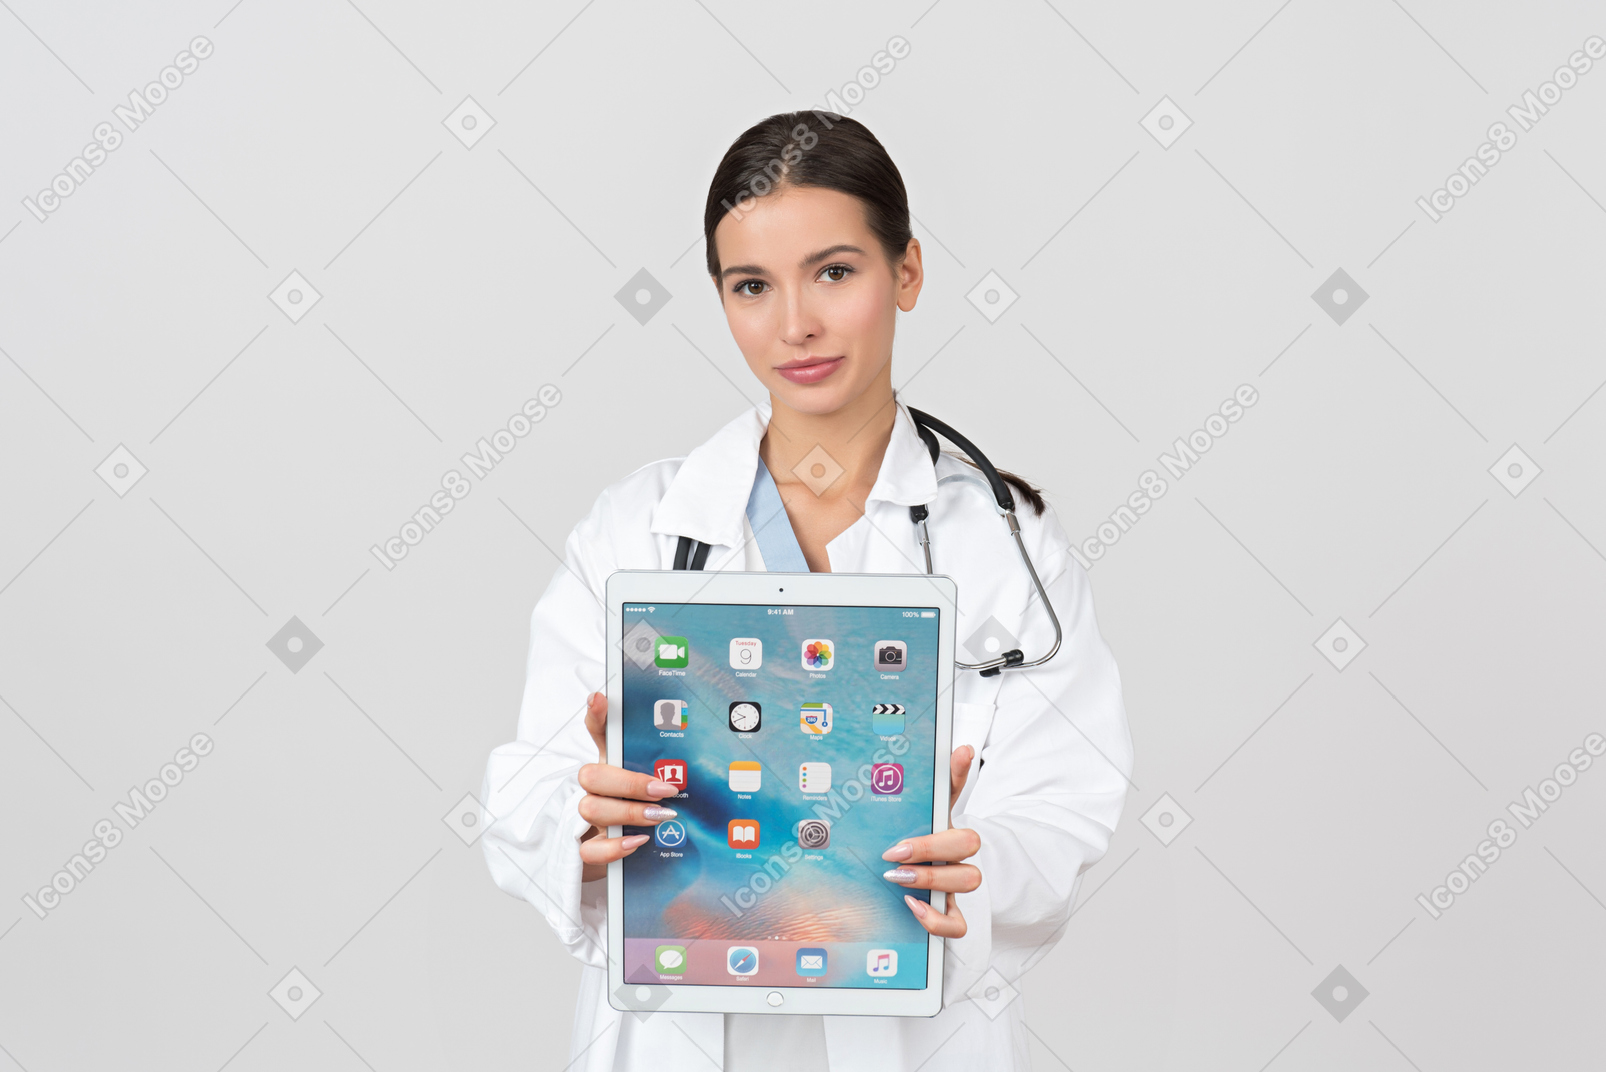 Être numérique tout en faisant le travail du docteur est essentiel de nos jours